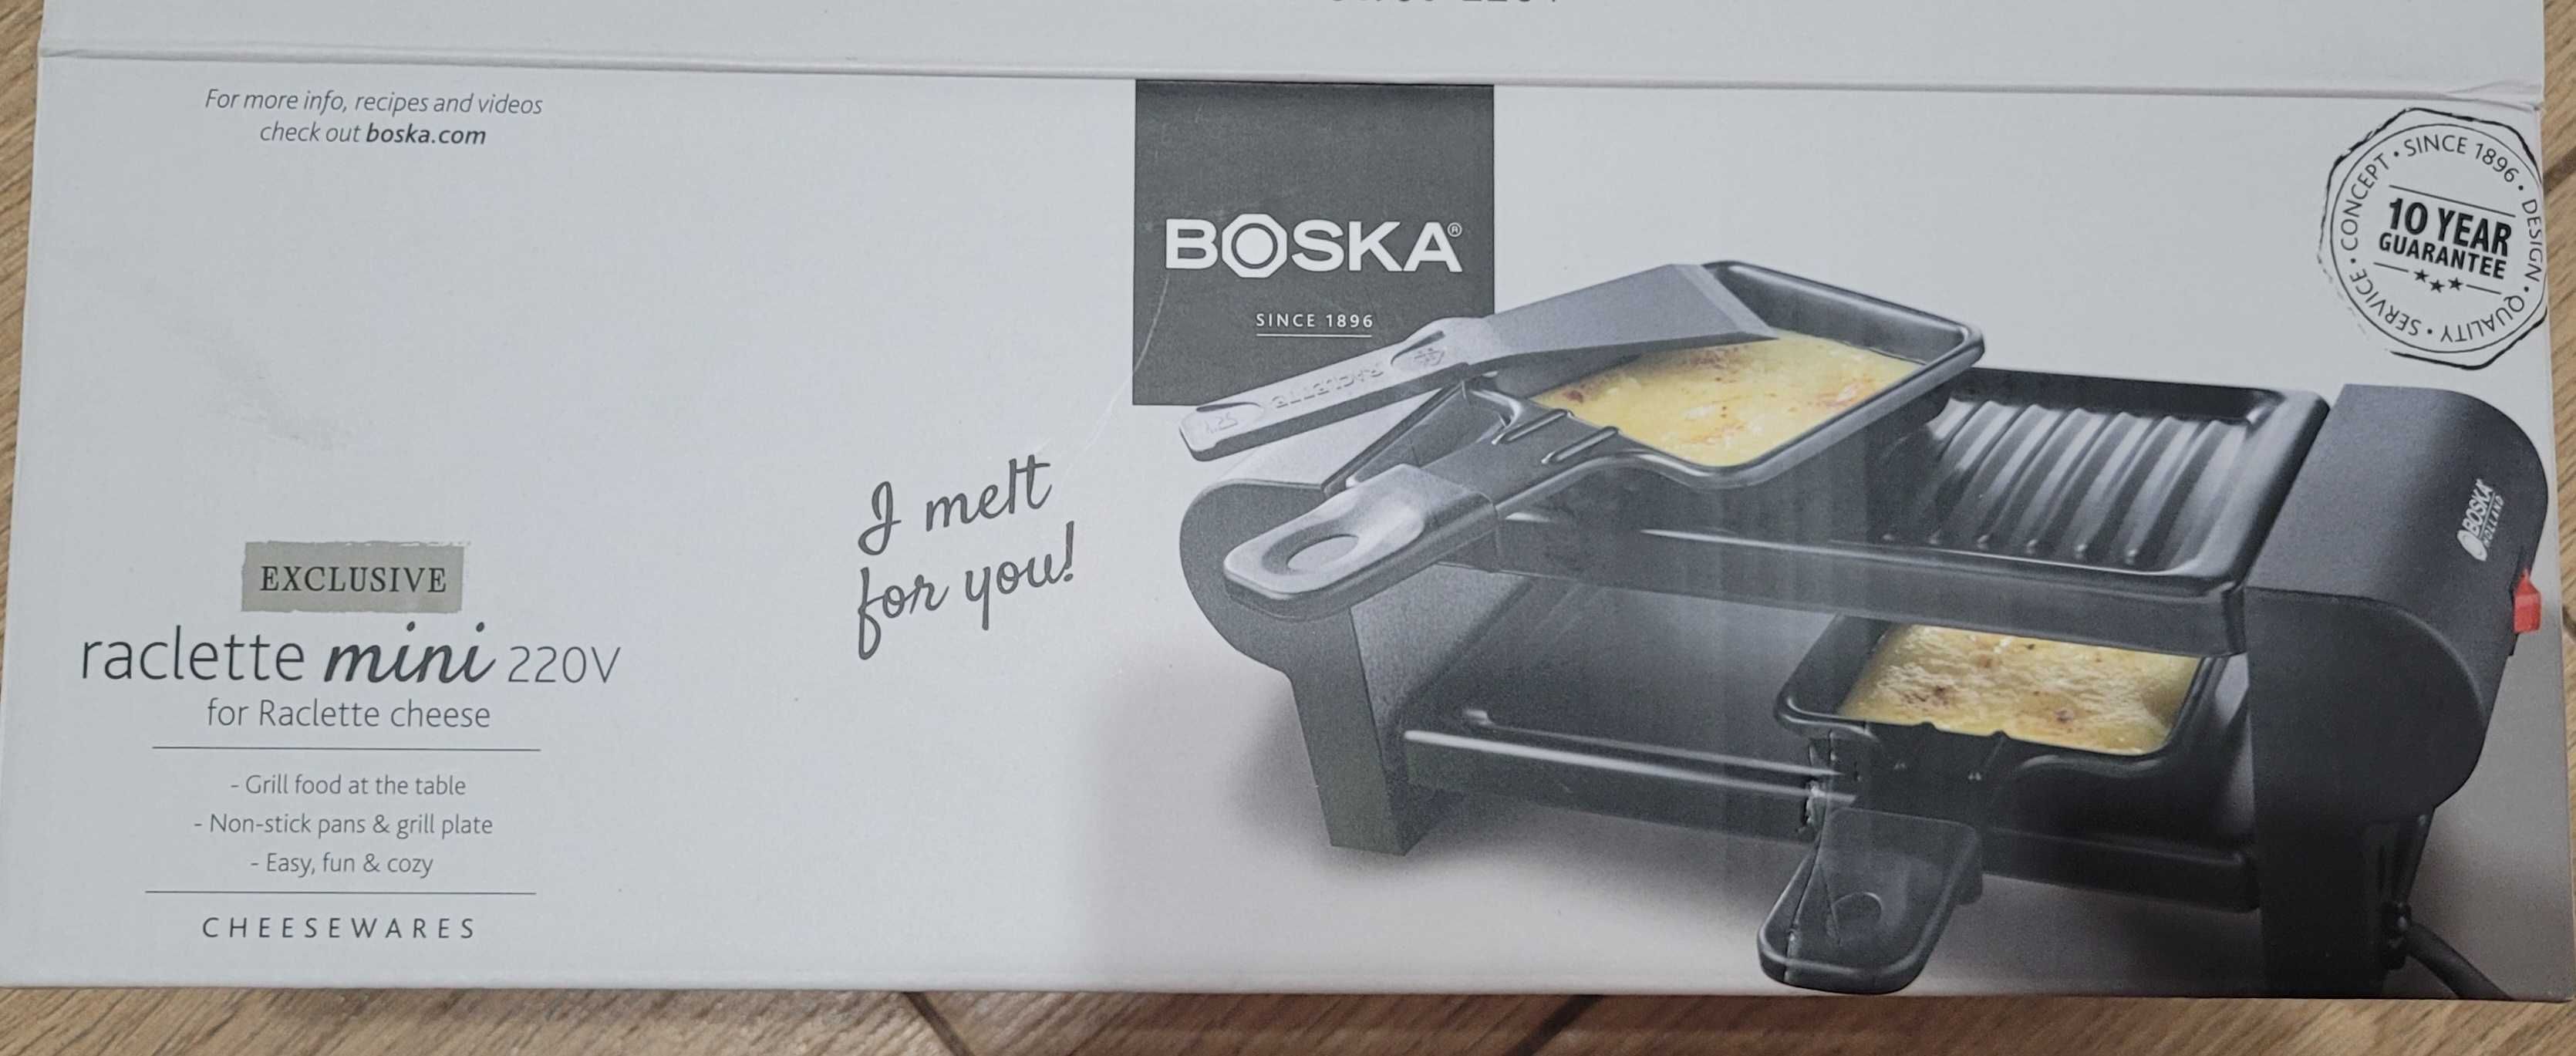 boska-raclette-mini-220v